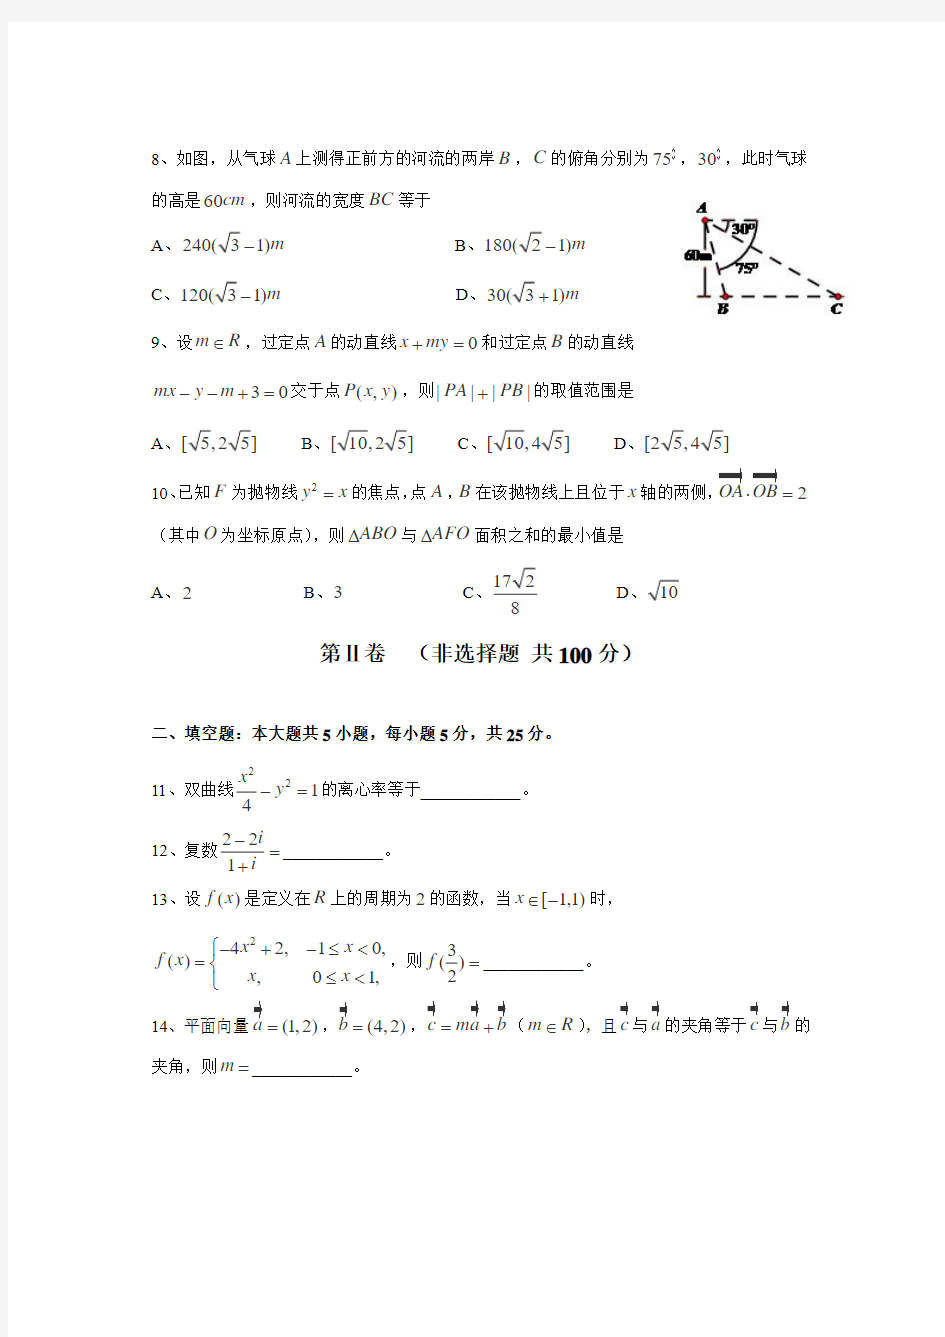 2014年高考文科数学试题(四川卷)及参考答案